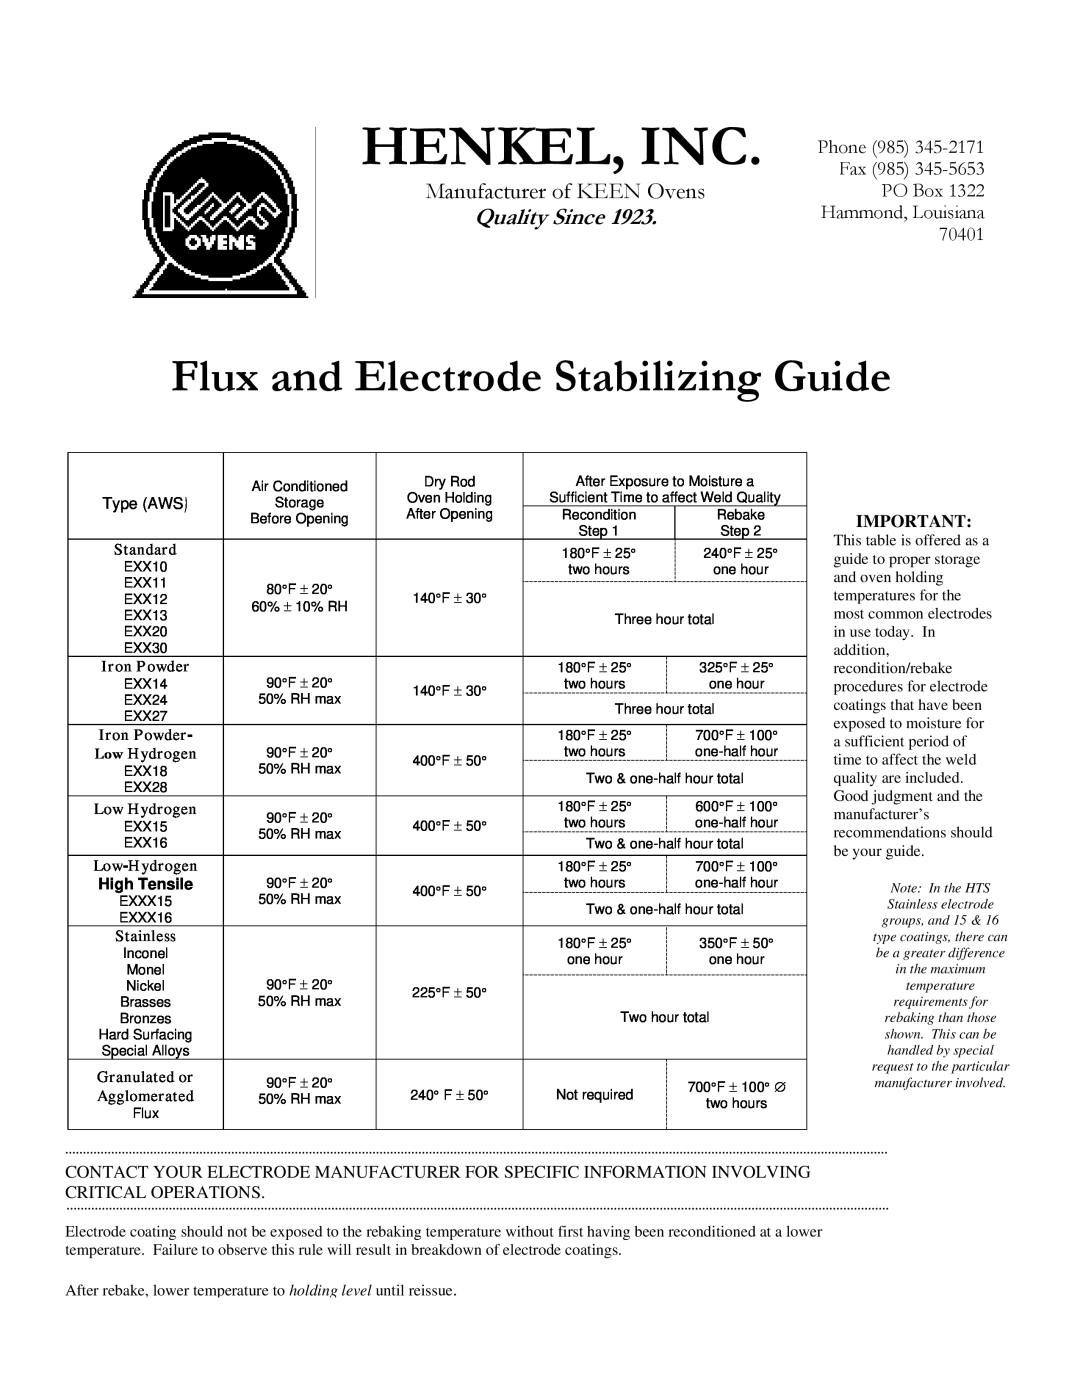 Henkel KF-100A Henkel, Inc, Flux and Electrode Stabilizing Guide, Manufacturer of KEEN Ovens, Quality Since, Standard 